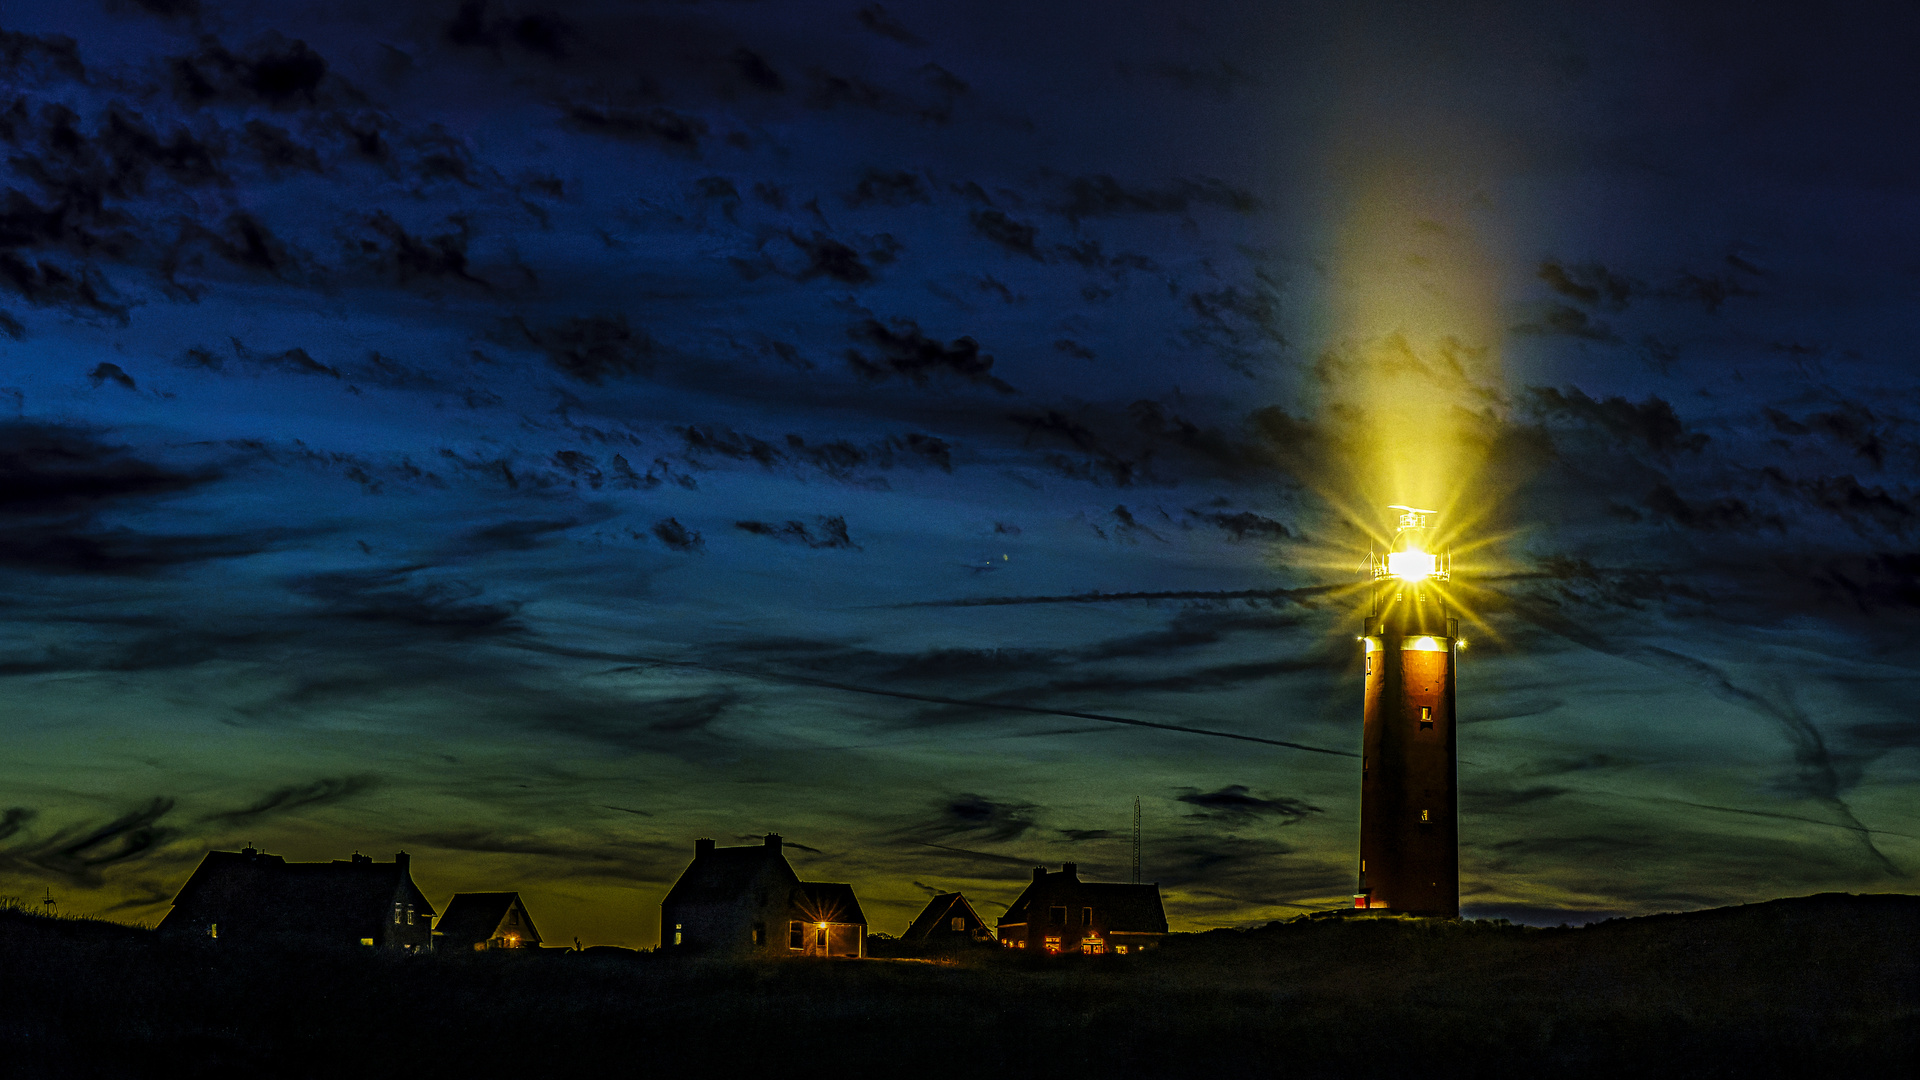 Der Leuchtturm von Texel 02 - Texel Lighthouse 02